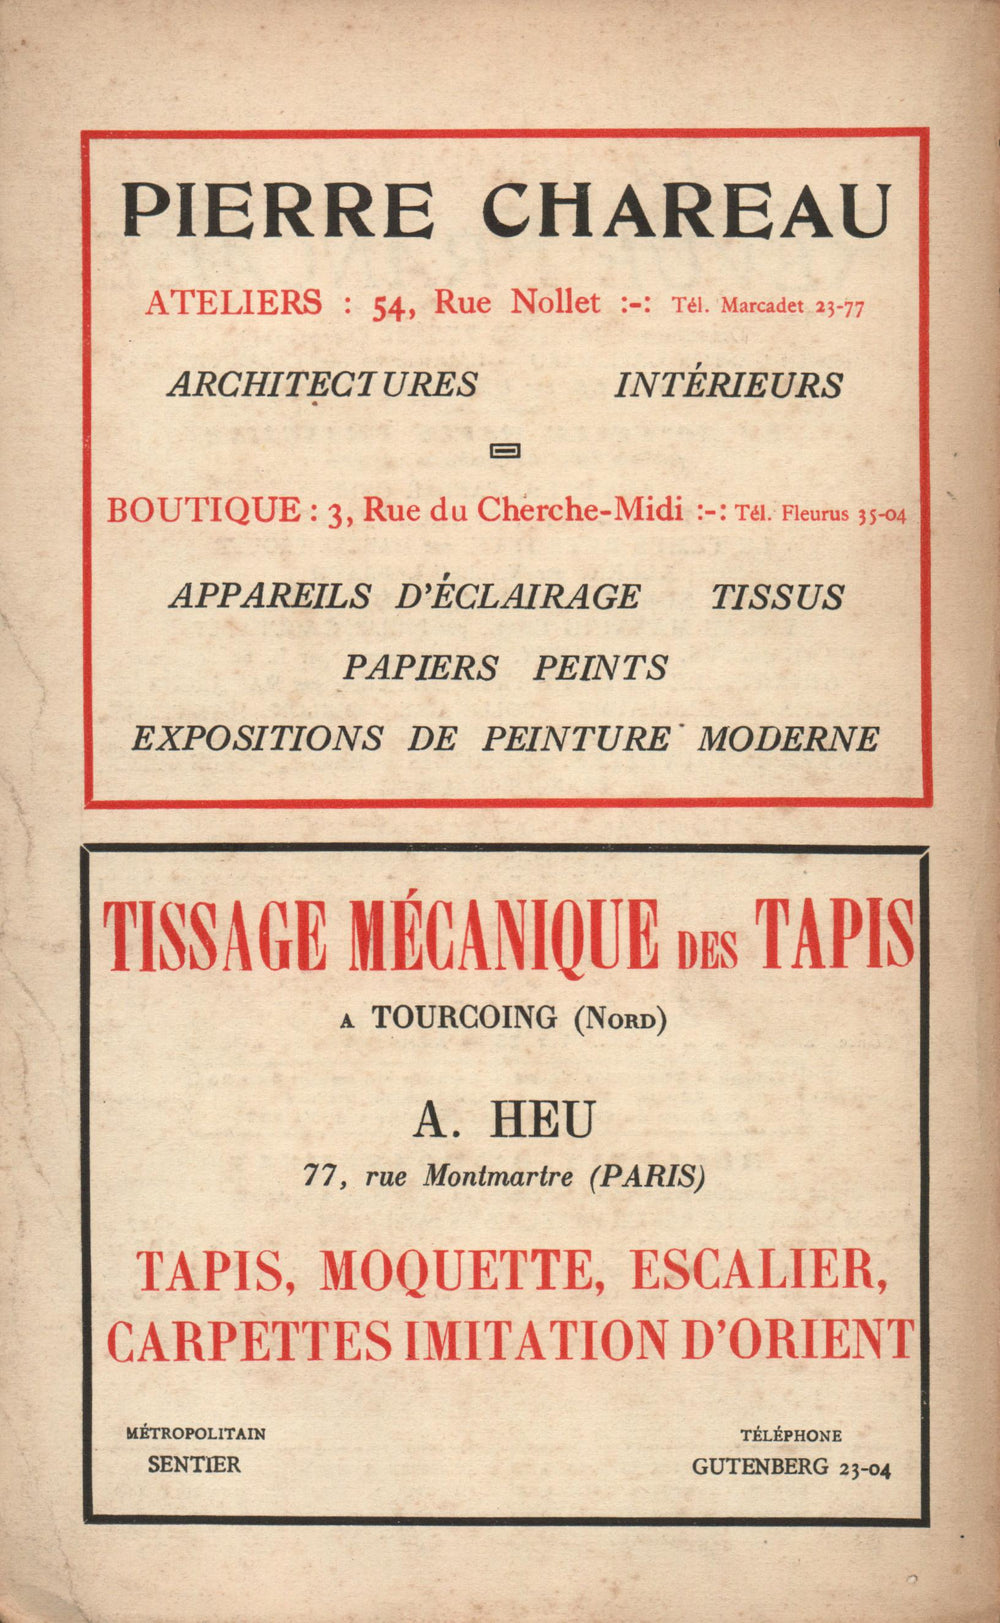 La Nouvelle Revue Française N' 150 (Mars 1926)